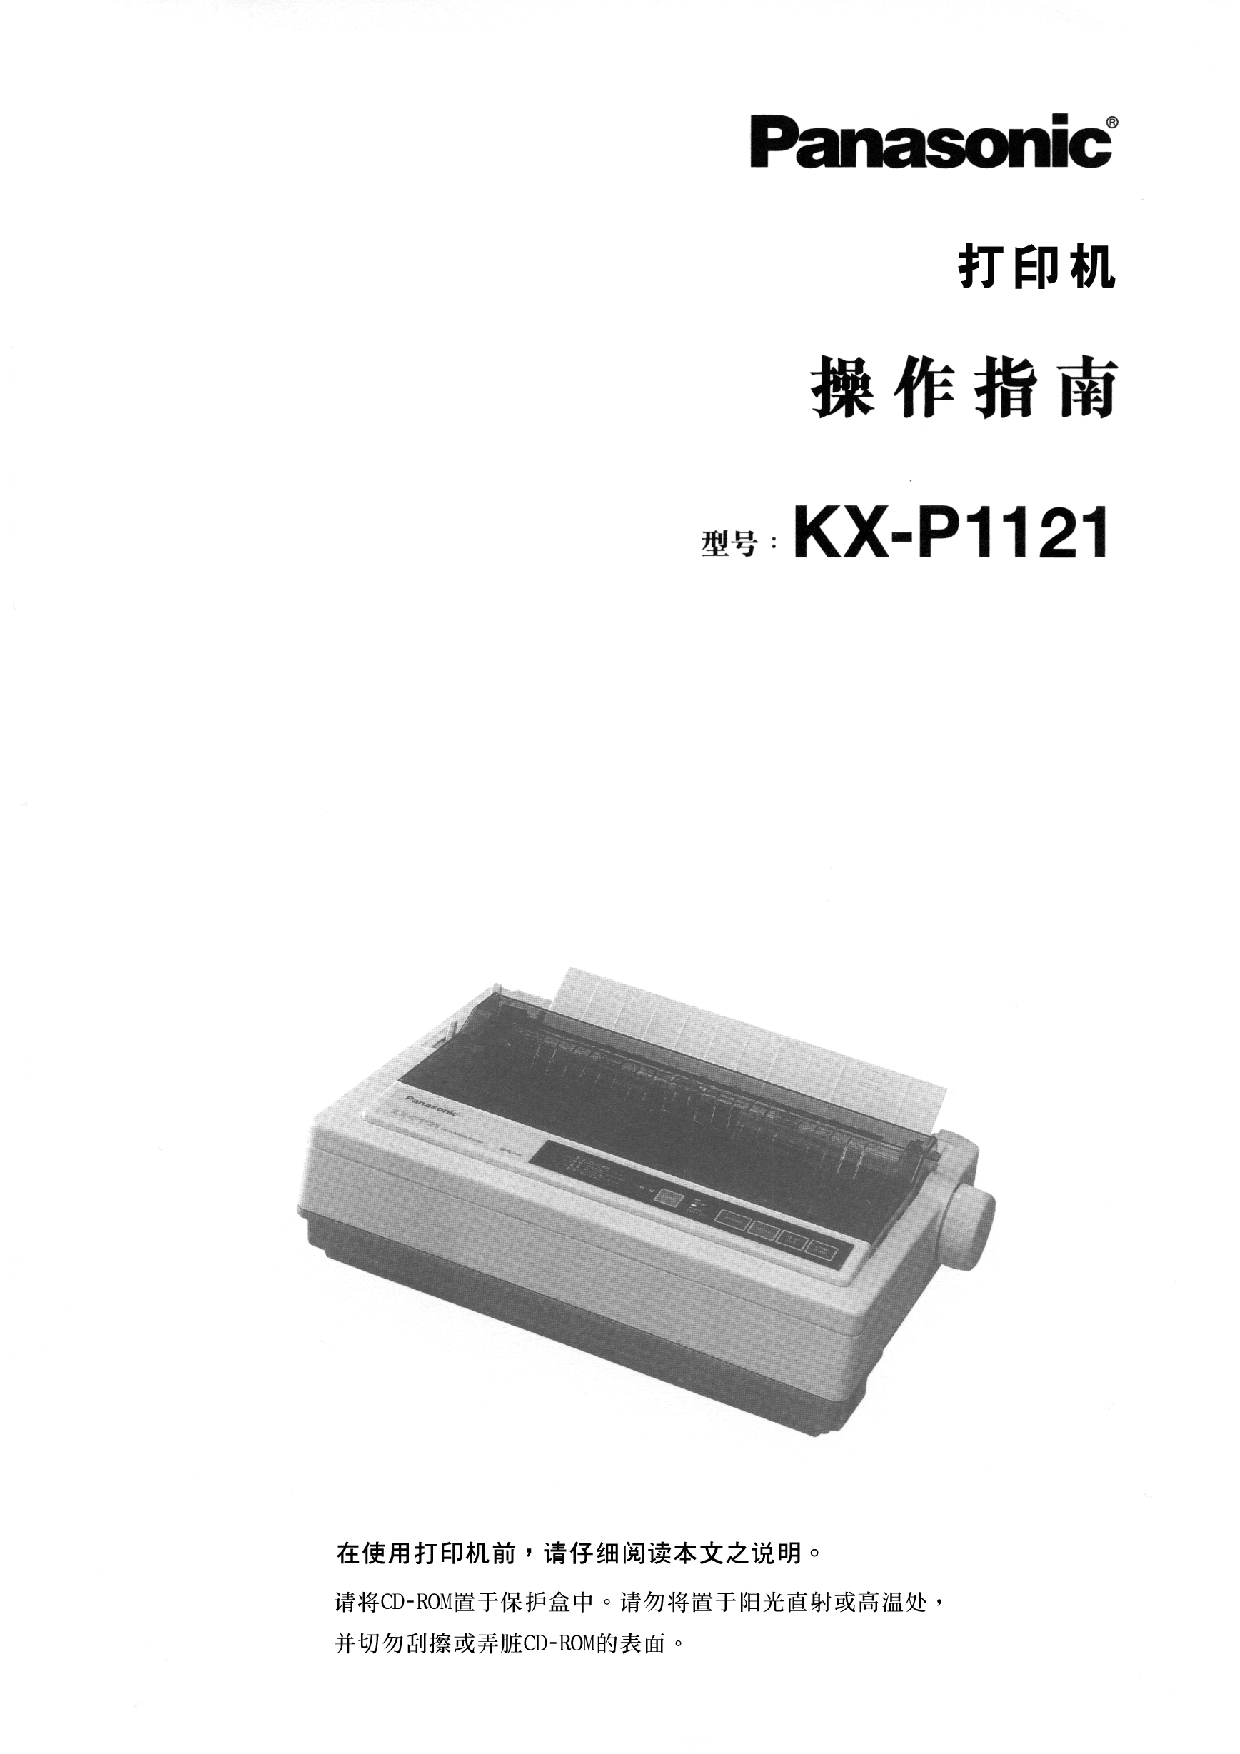 松下 Panasonic KX-P1121 操作指南 封面